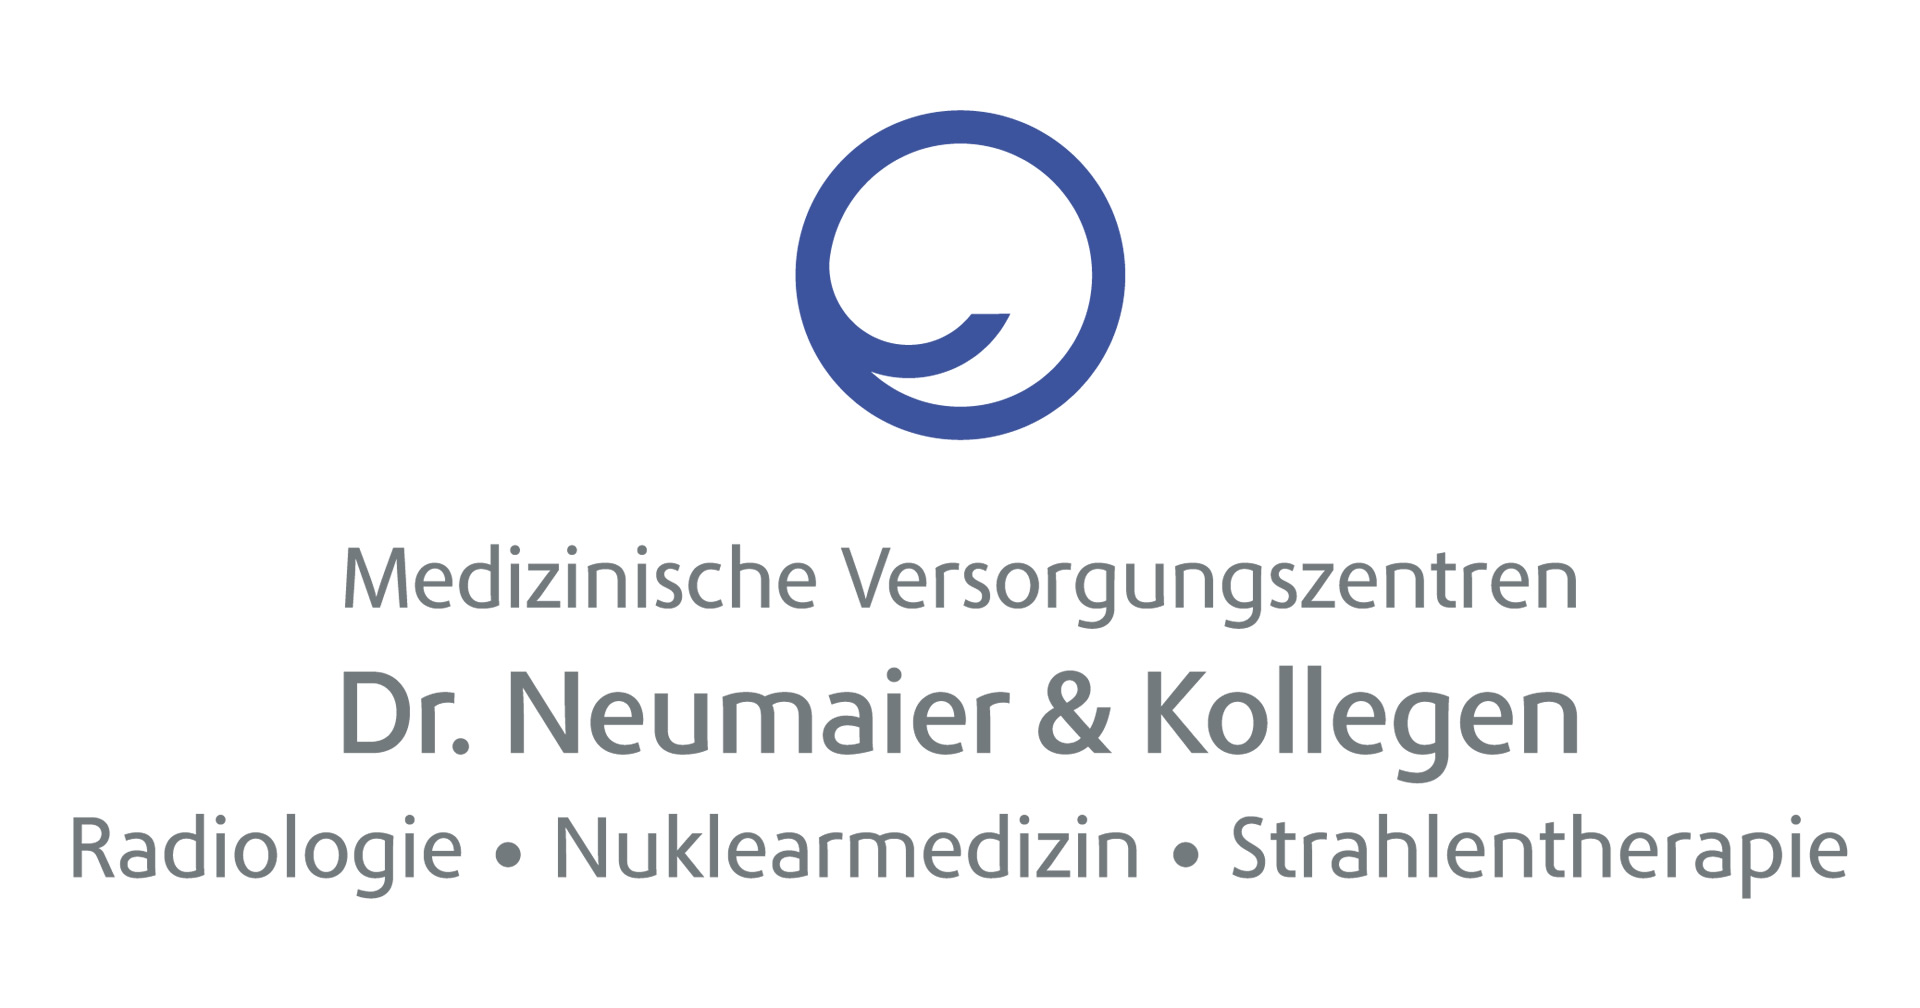 MVZ Dr. Neumaier & Kollegen